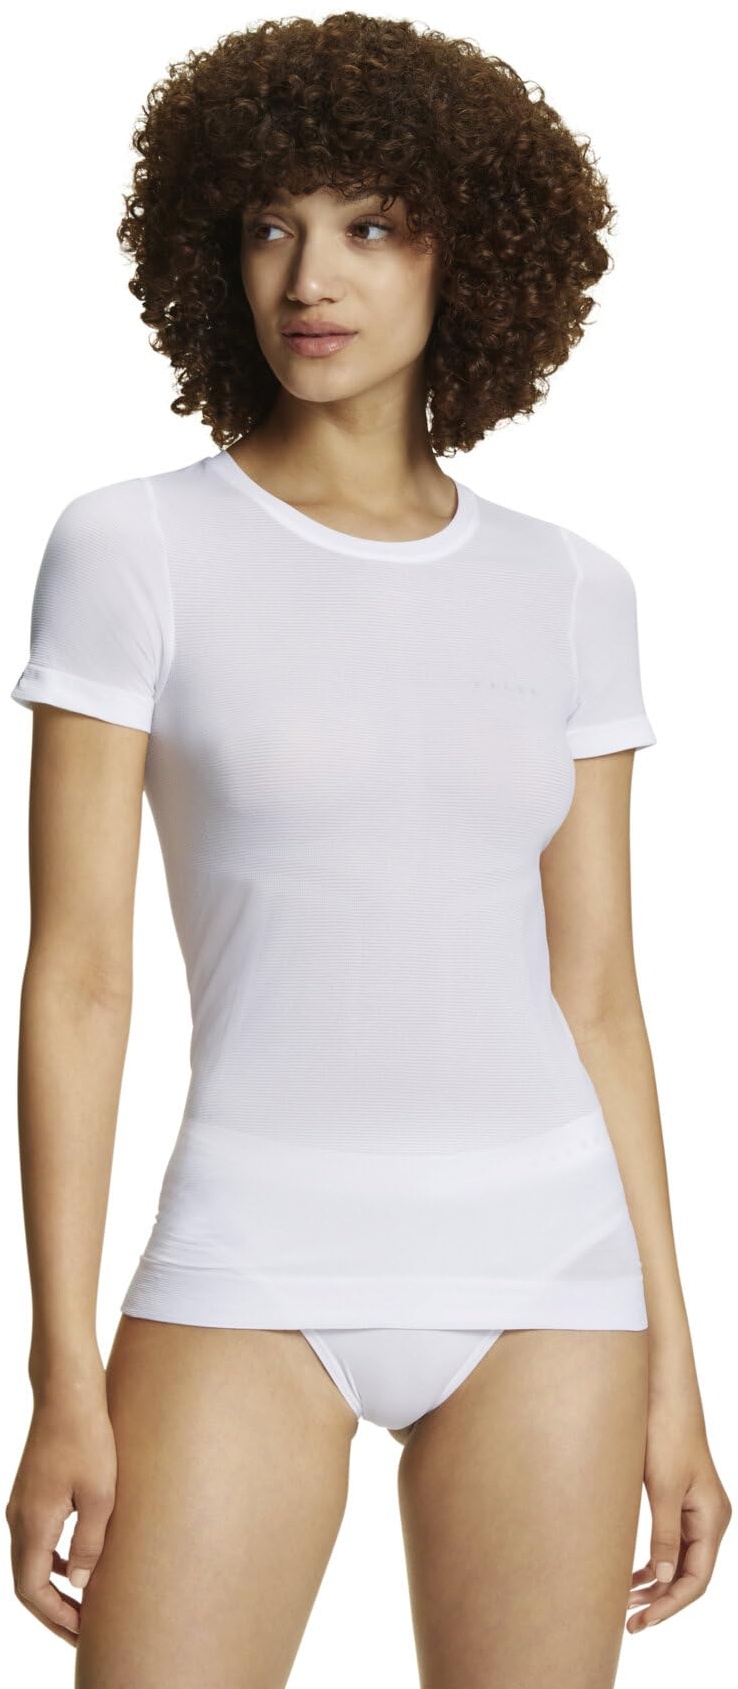 FALKE Damen Baselayer-Shirt Ultralight Cool Round Neck W S/S SH Funktionsmaterial Schnelltrocknend 1 Stück, Weiß (White 2860), S